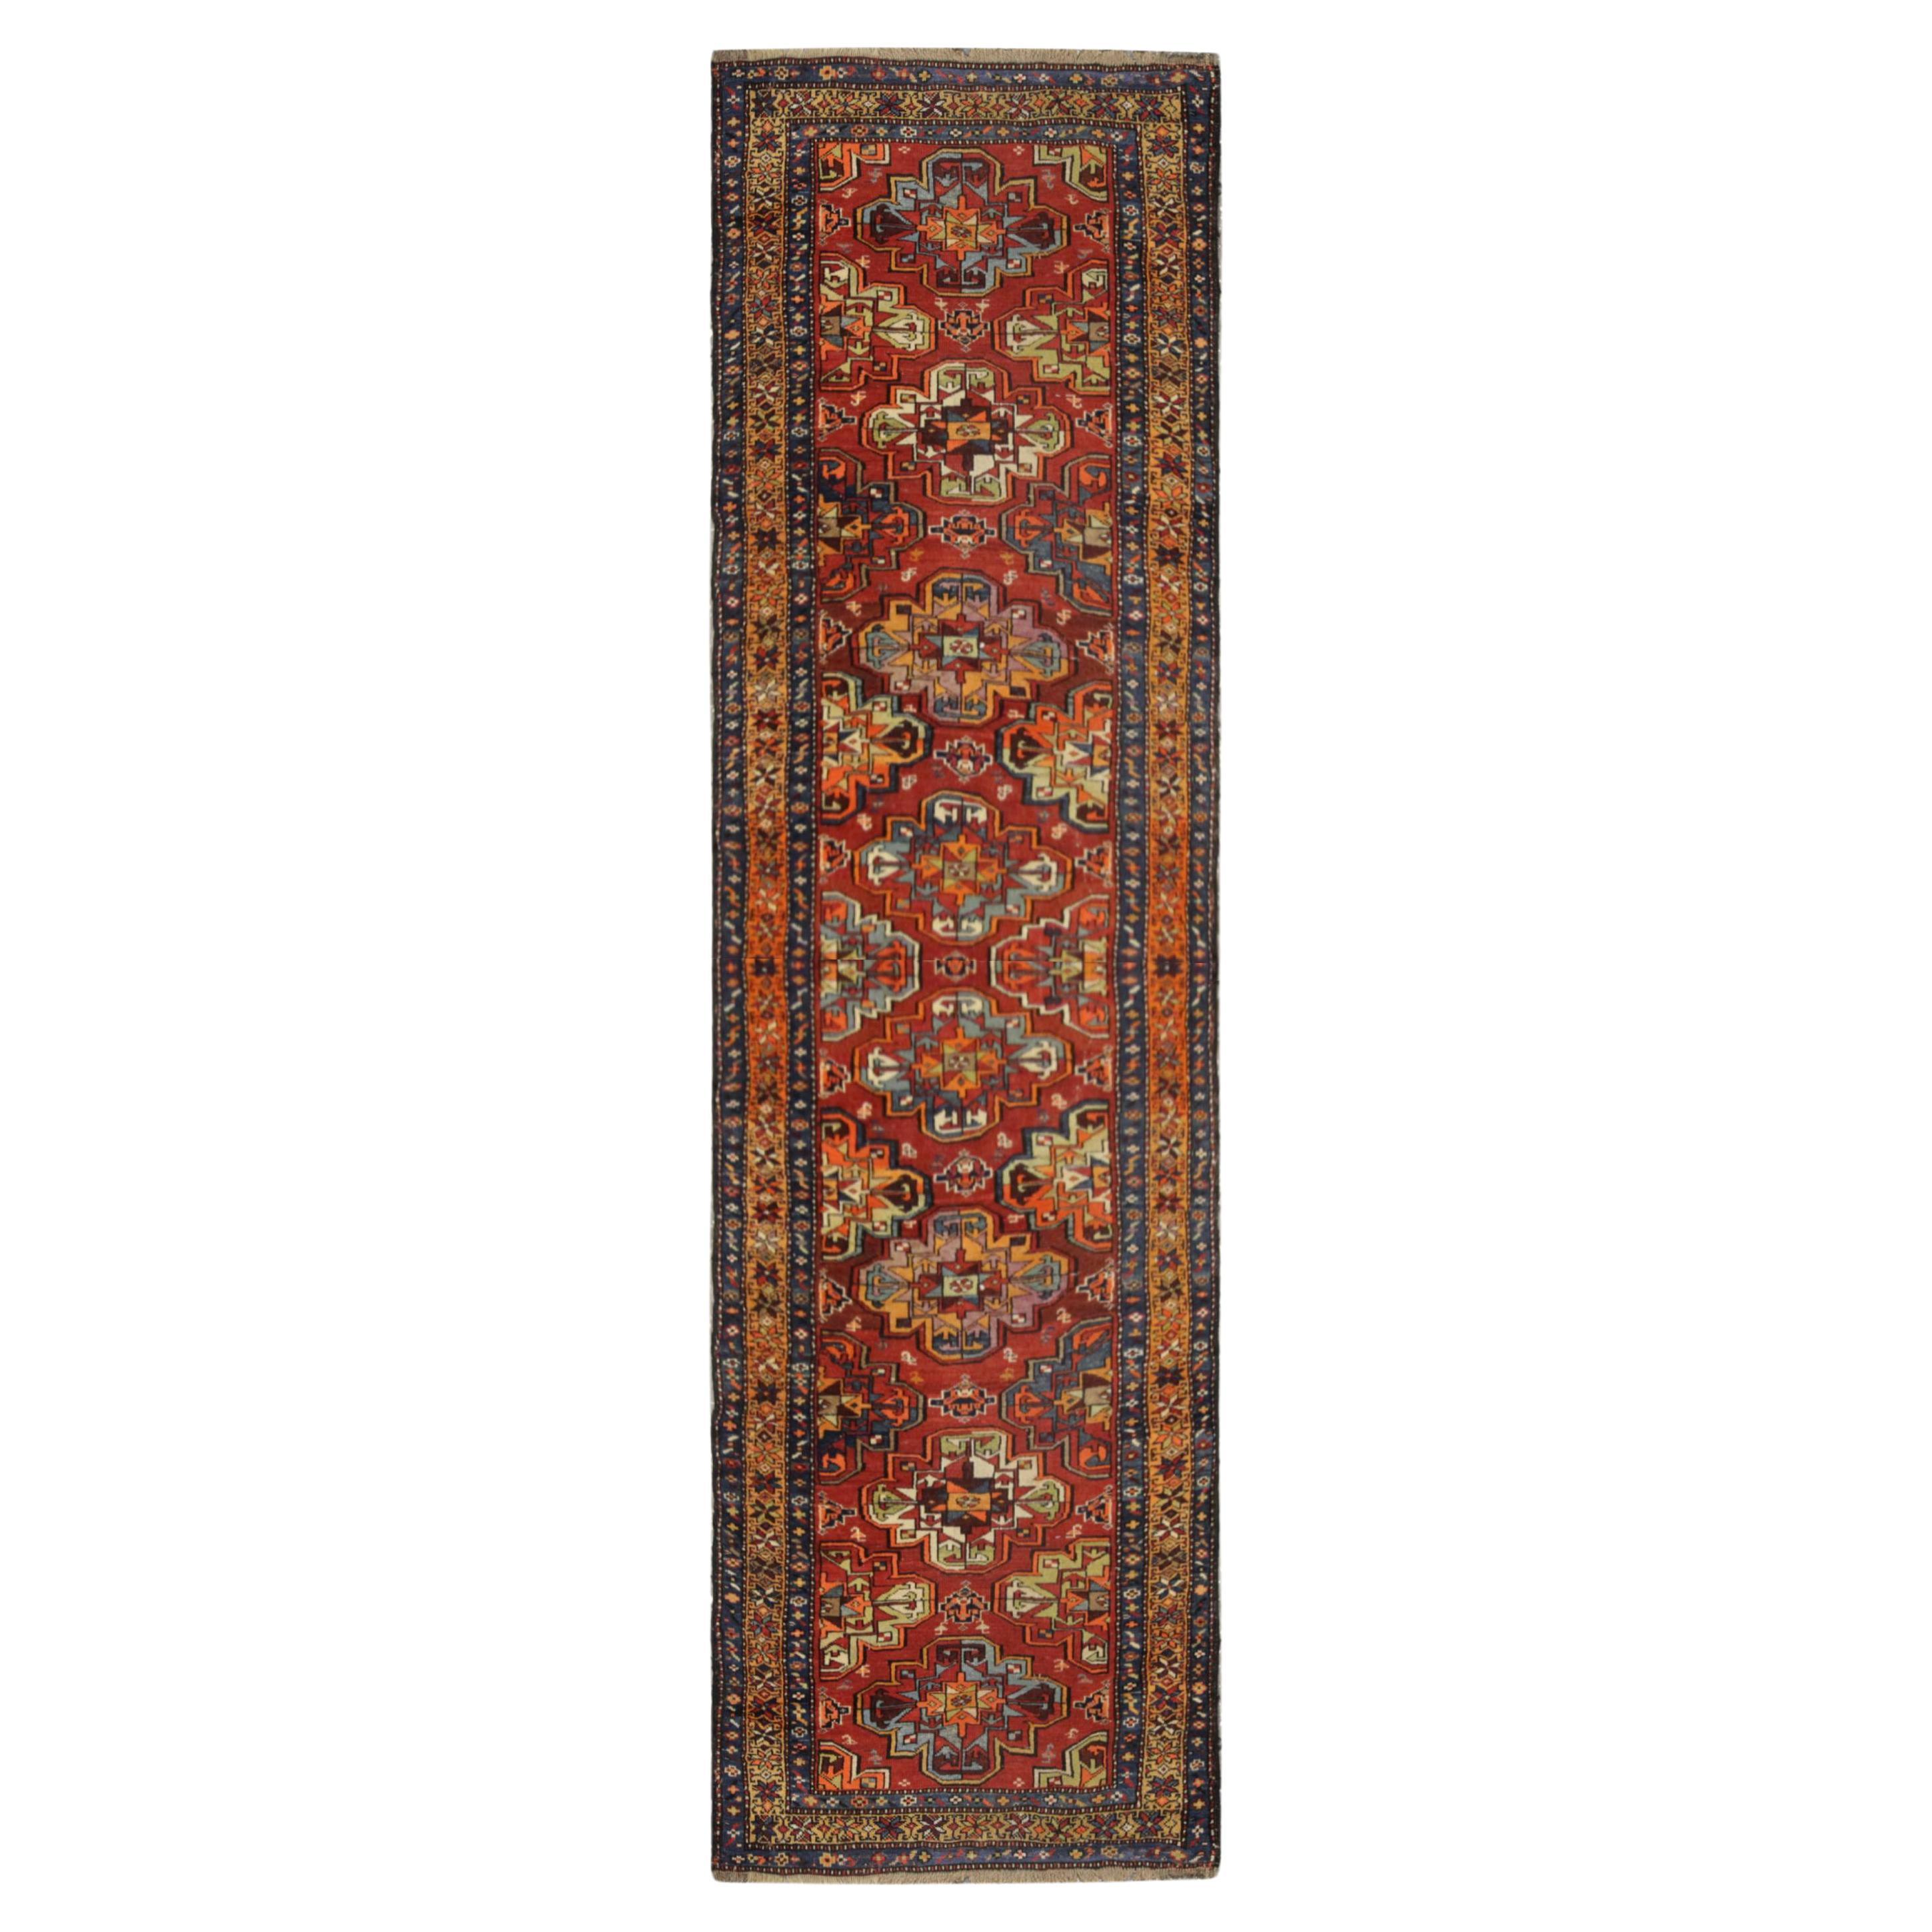 Antique Rug, Turkmen Oriental Runner, Living Room Carpet Runner